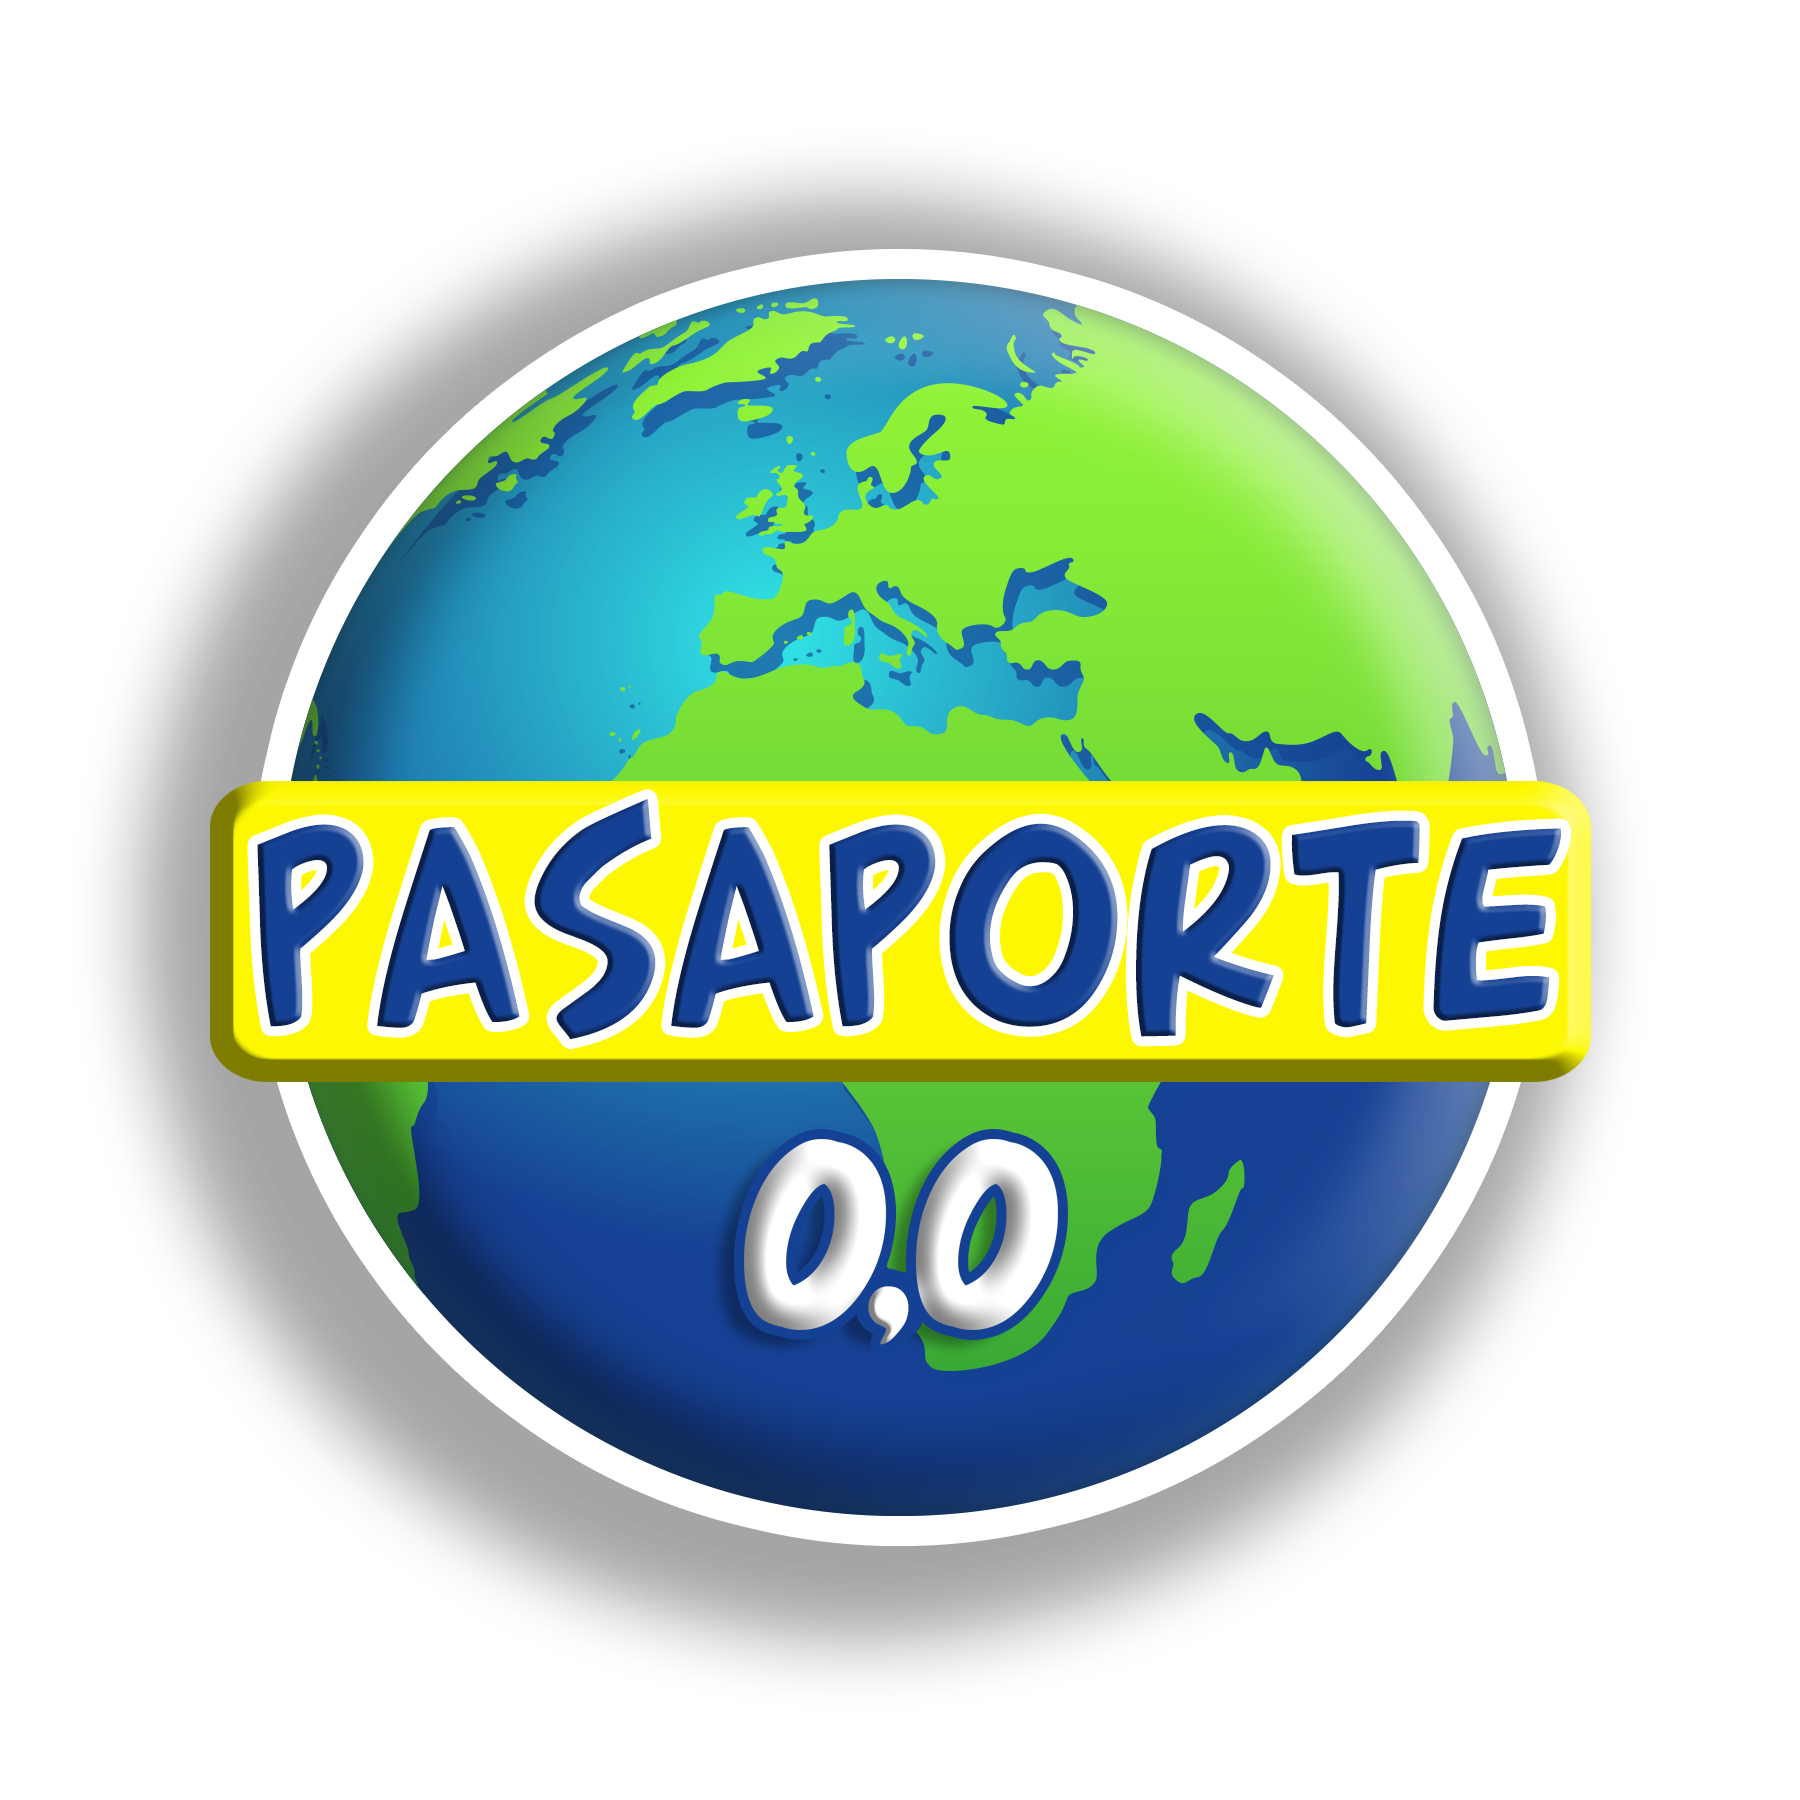 Pasaportea 0,0